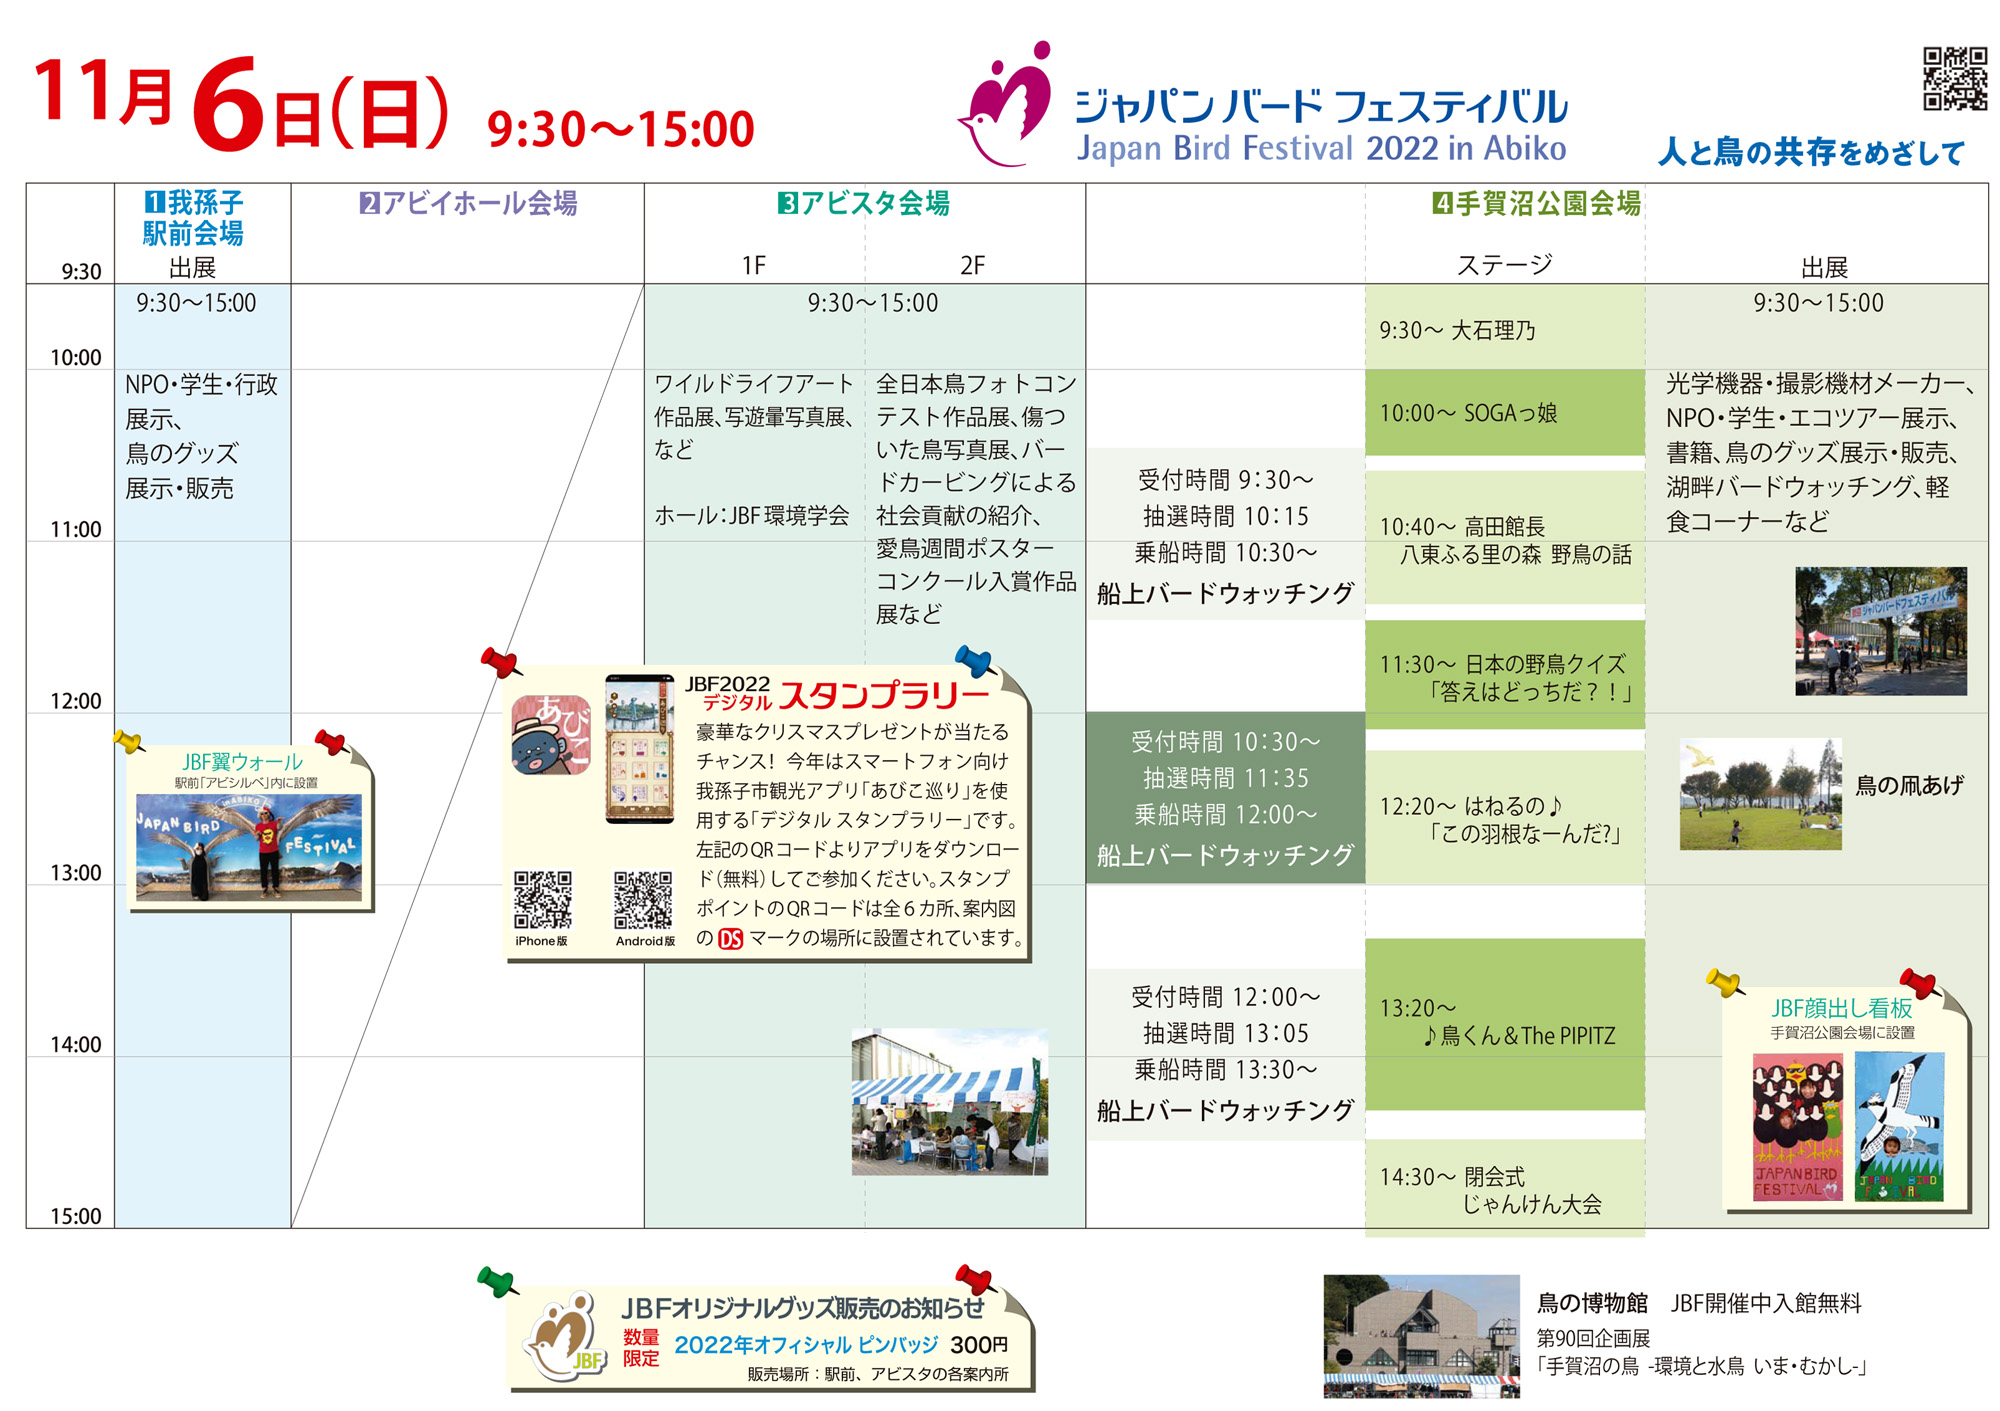 ジャパン・バード・フェスティバル会場内案内マップ